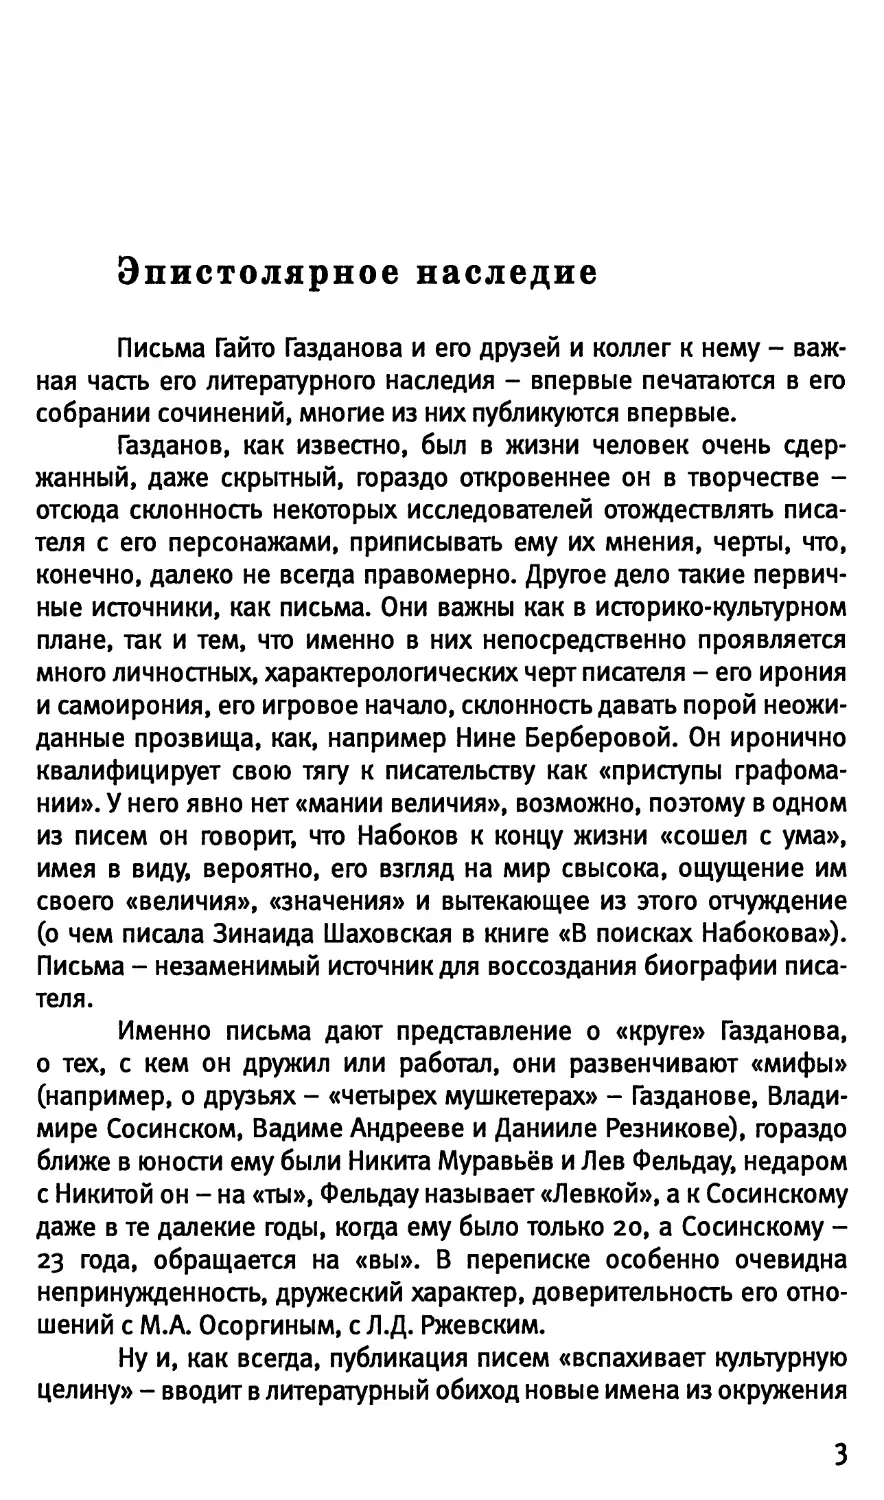 Т.Н. Красавченко. Эпистолярное наследие